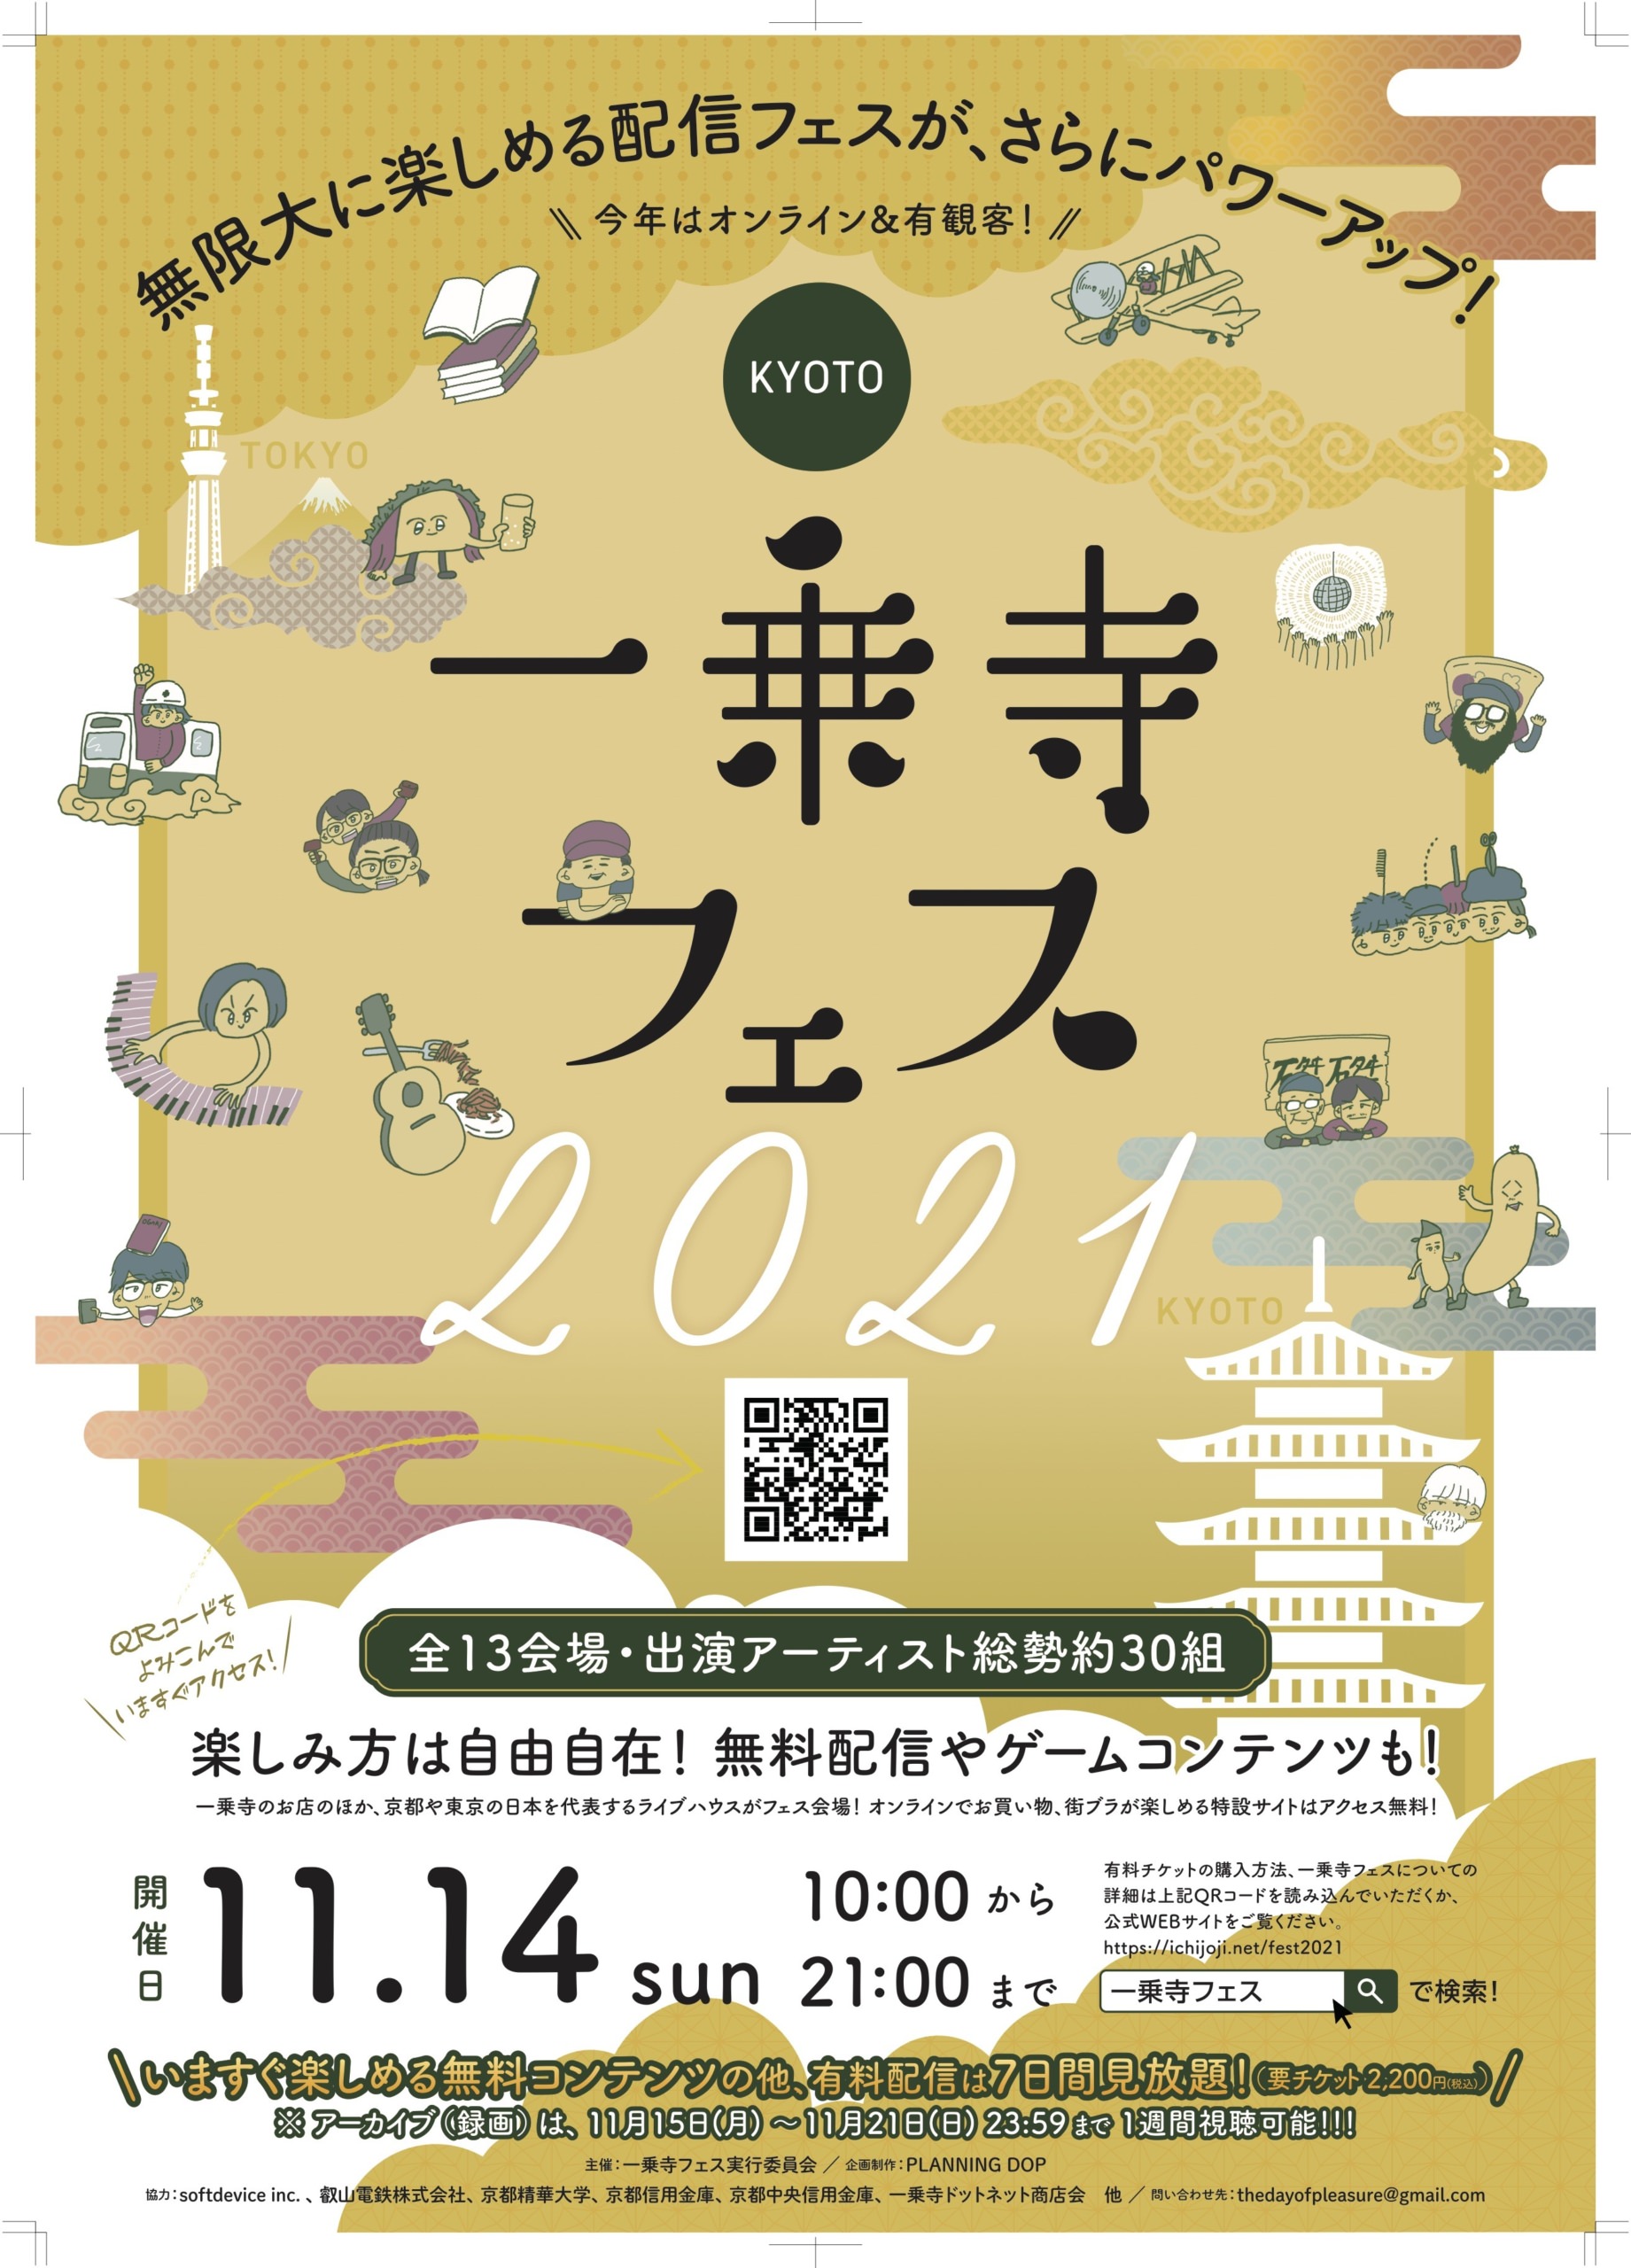 バディ×音楽CDシリーズ『東京カラーソニック!!』のユニットCD第4弾「Unit.4 海吏×神楽」が10月29日に発売！　また、11月13日からは『東京カラーソニック!!』初のフェアを開催!!